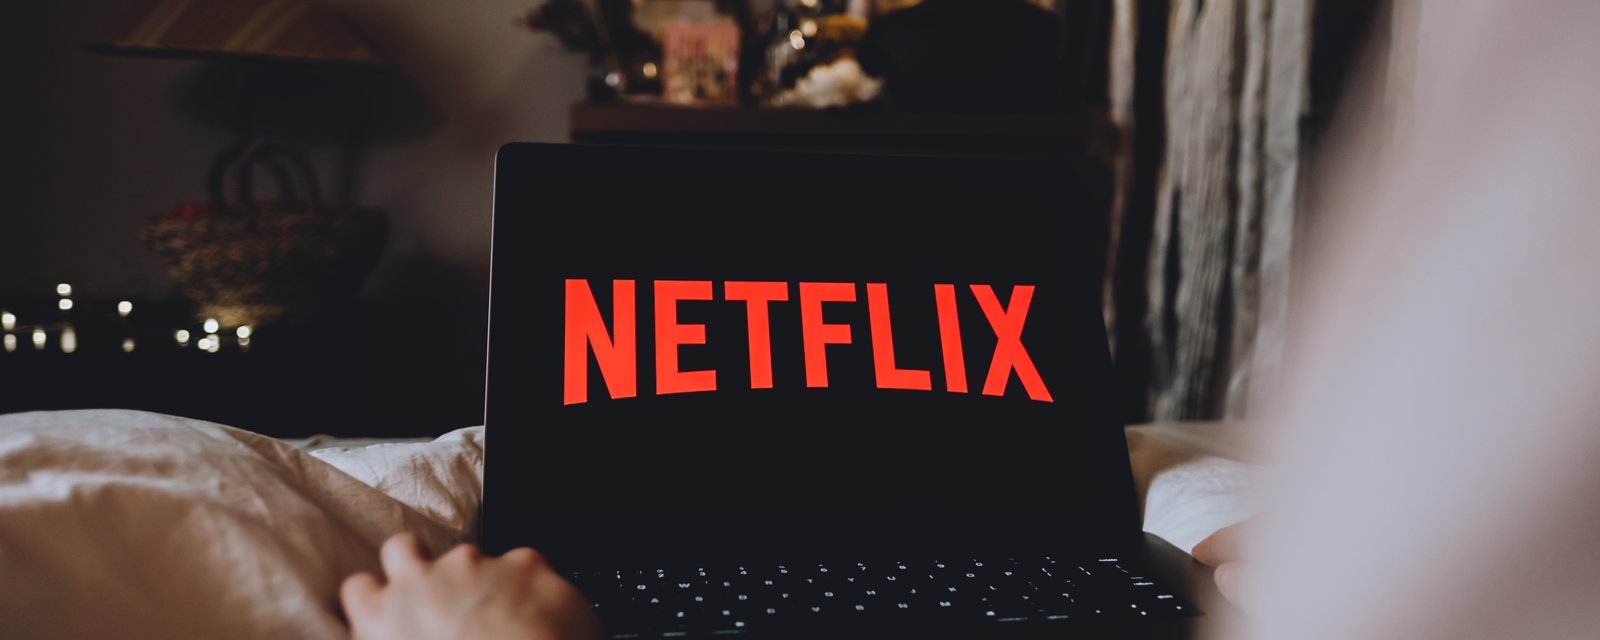 D'autres plateformes pourraient imiter Netflix concernant le partage des mots de passe